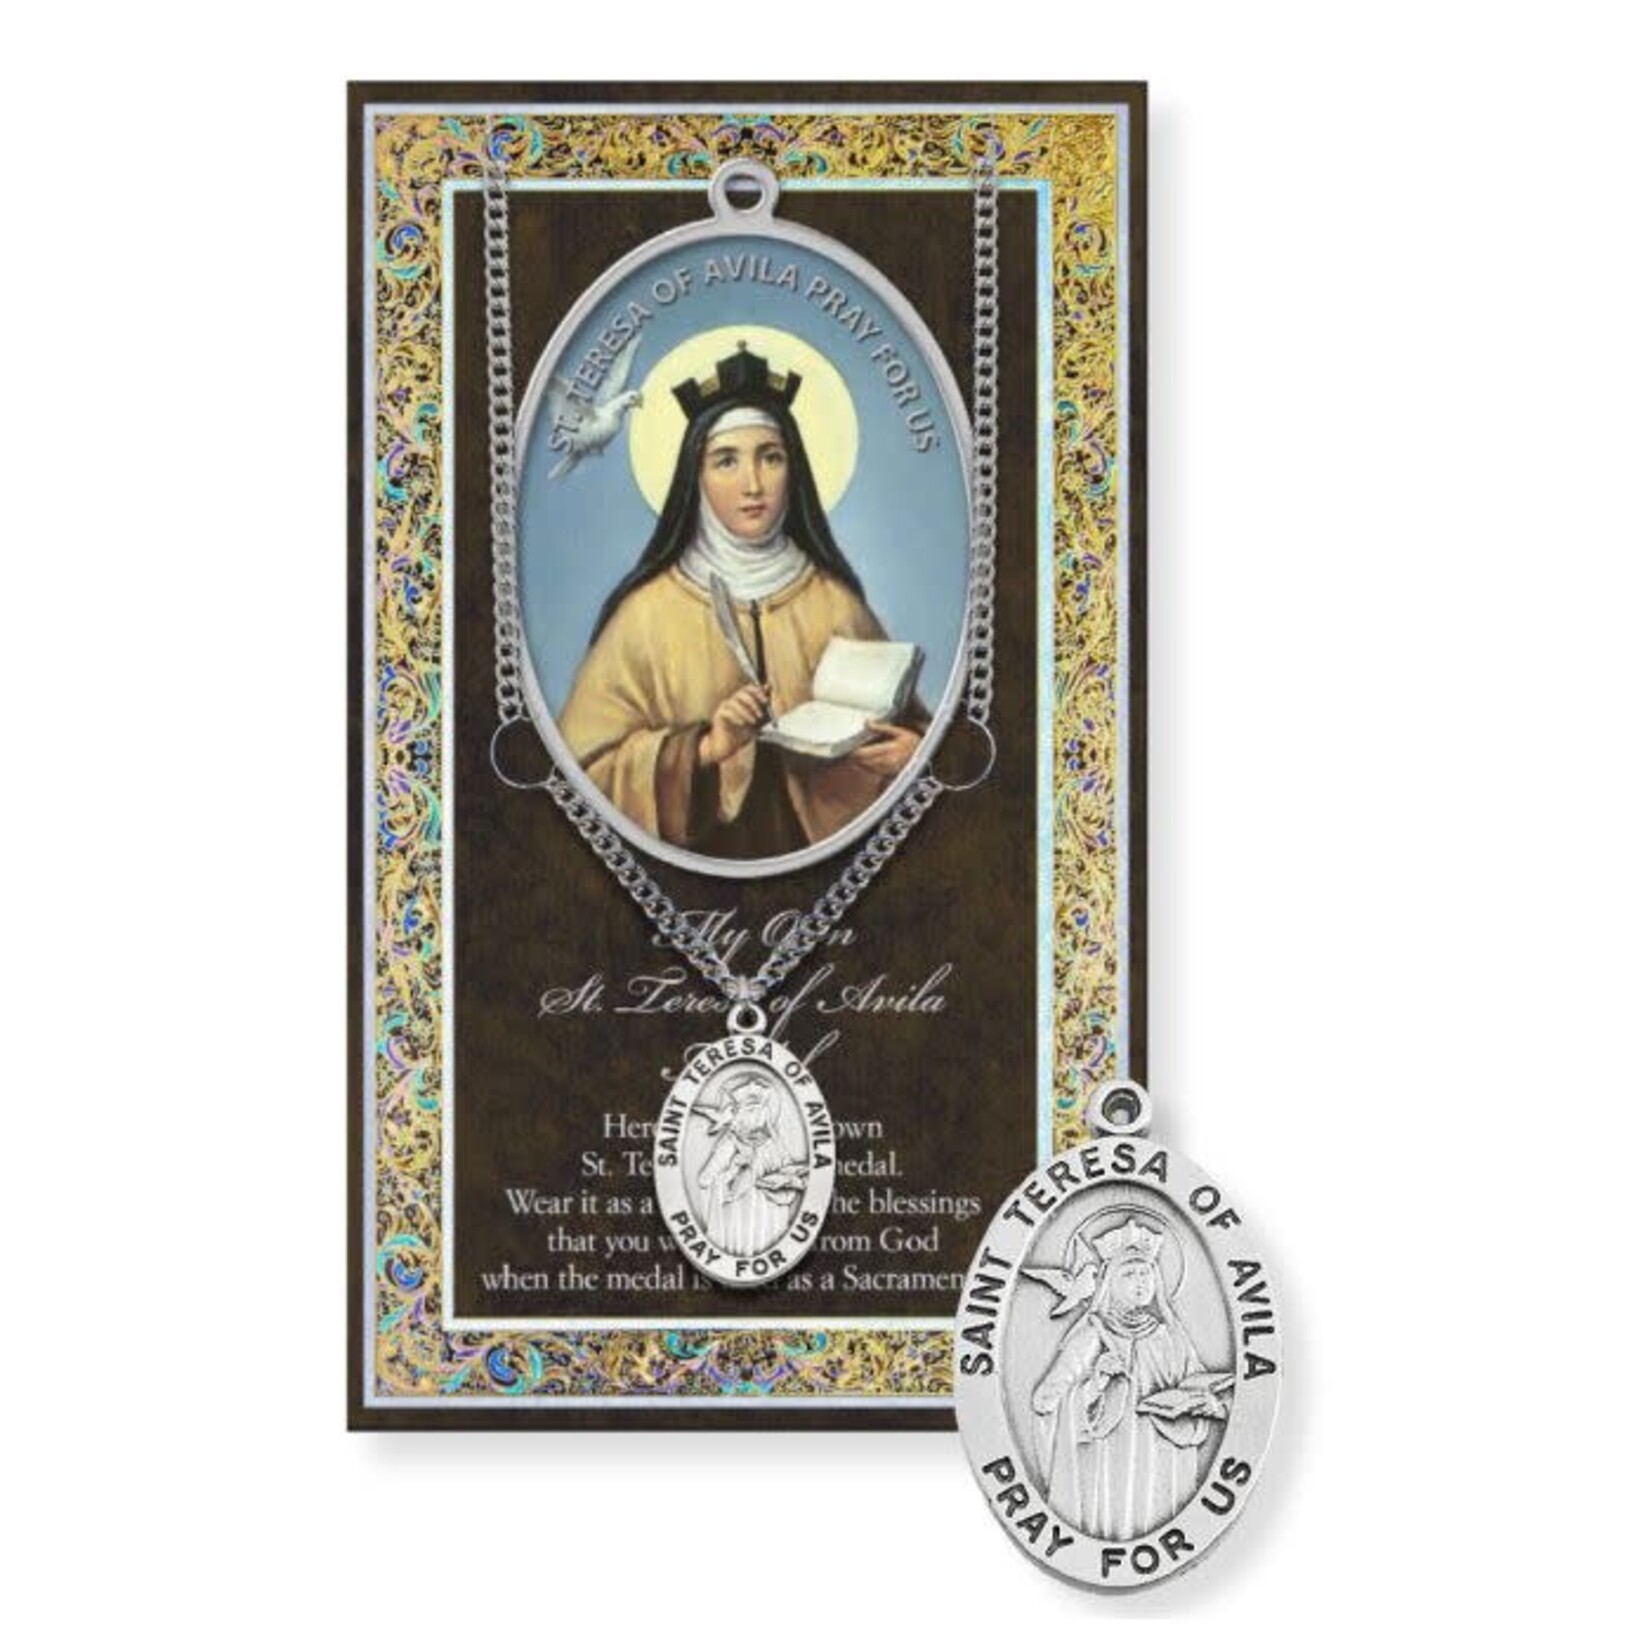 Saint Teresa of Avila Pewter Medal with Booklet